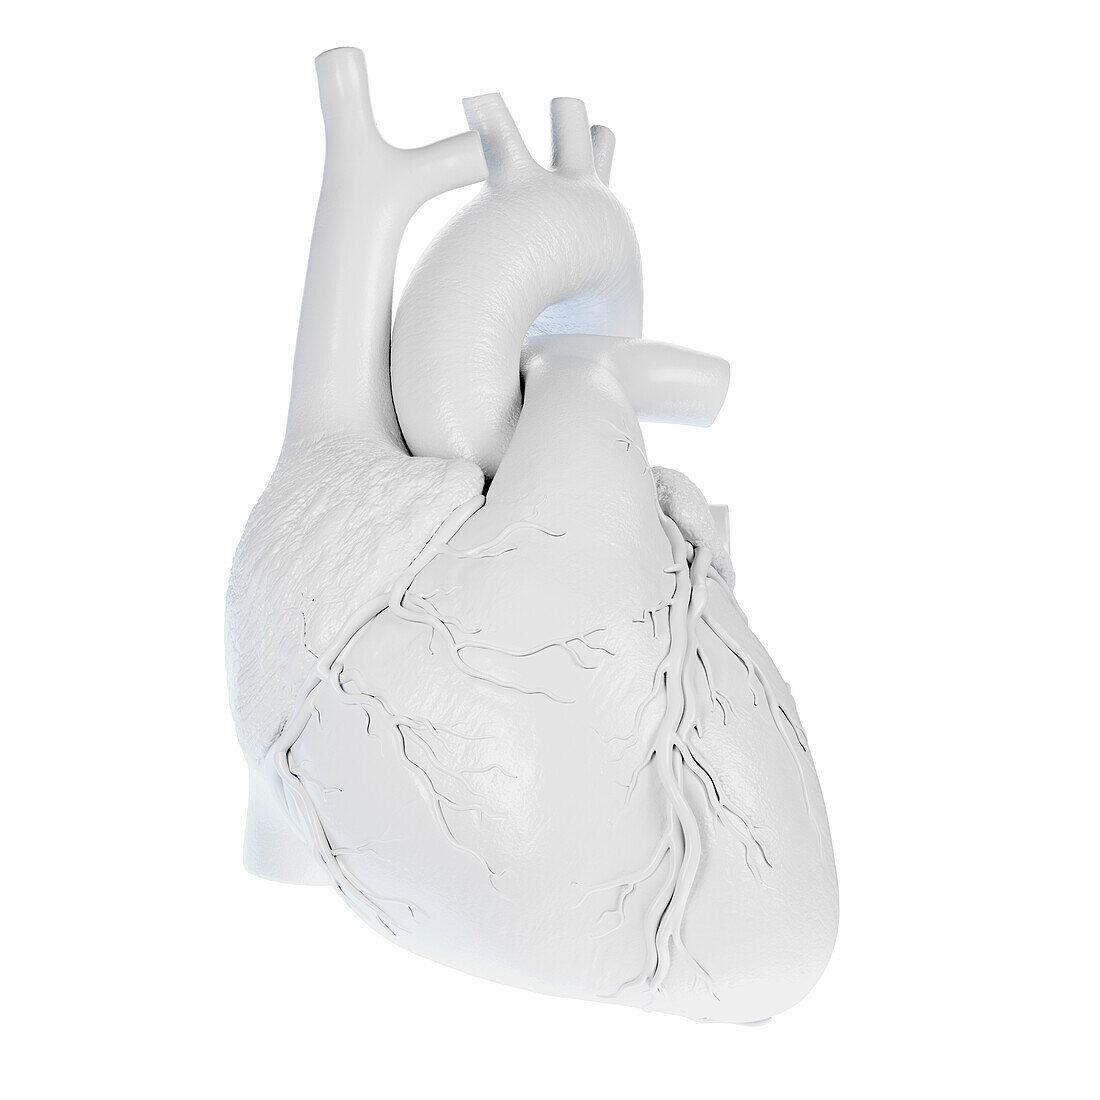 Human heart, illustration